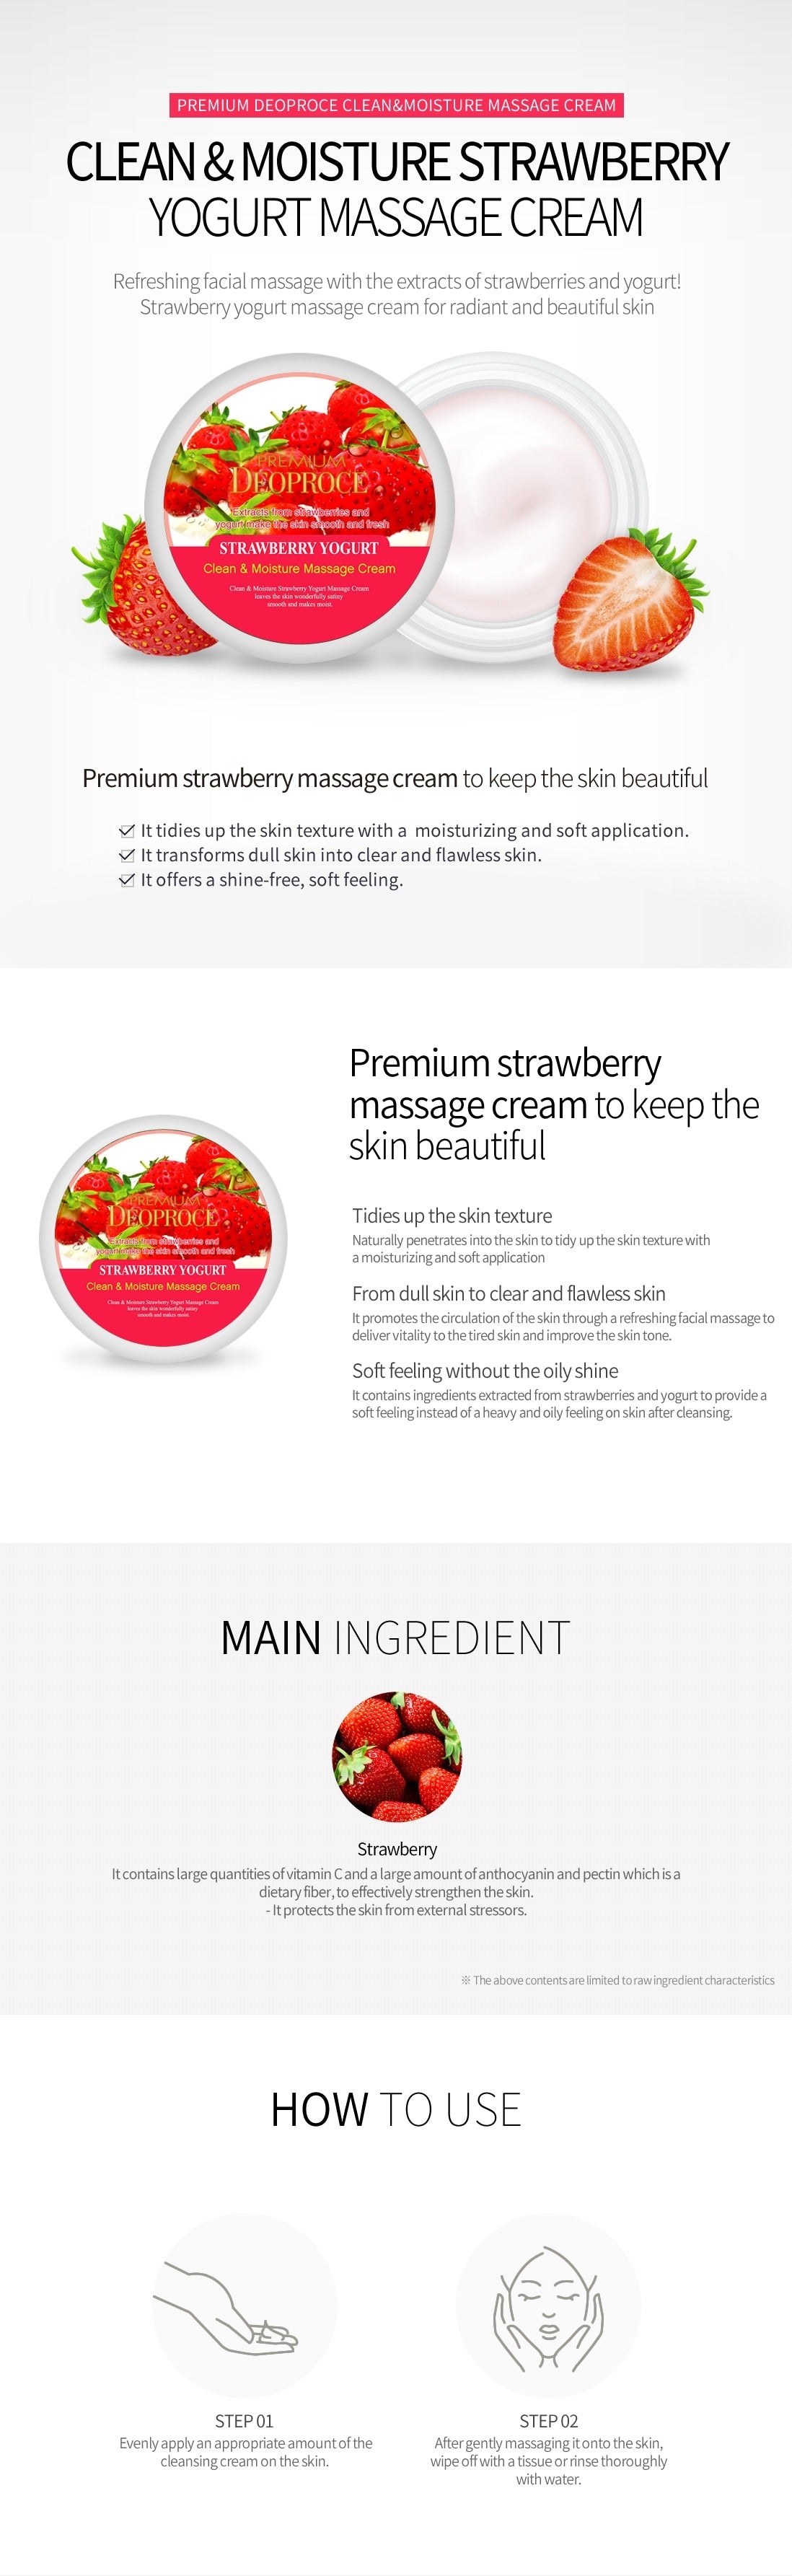 Premium Deoproce Clean & Moisture Strawberry Yogurt Massage Cream 300g